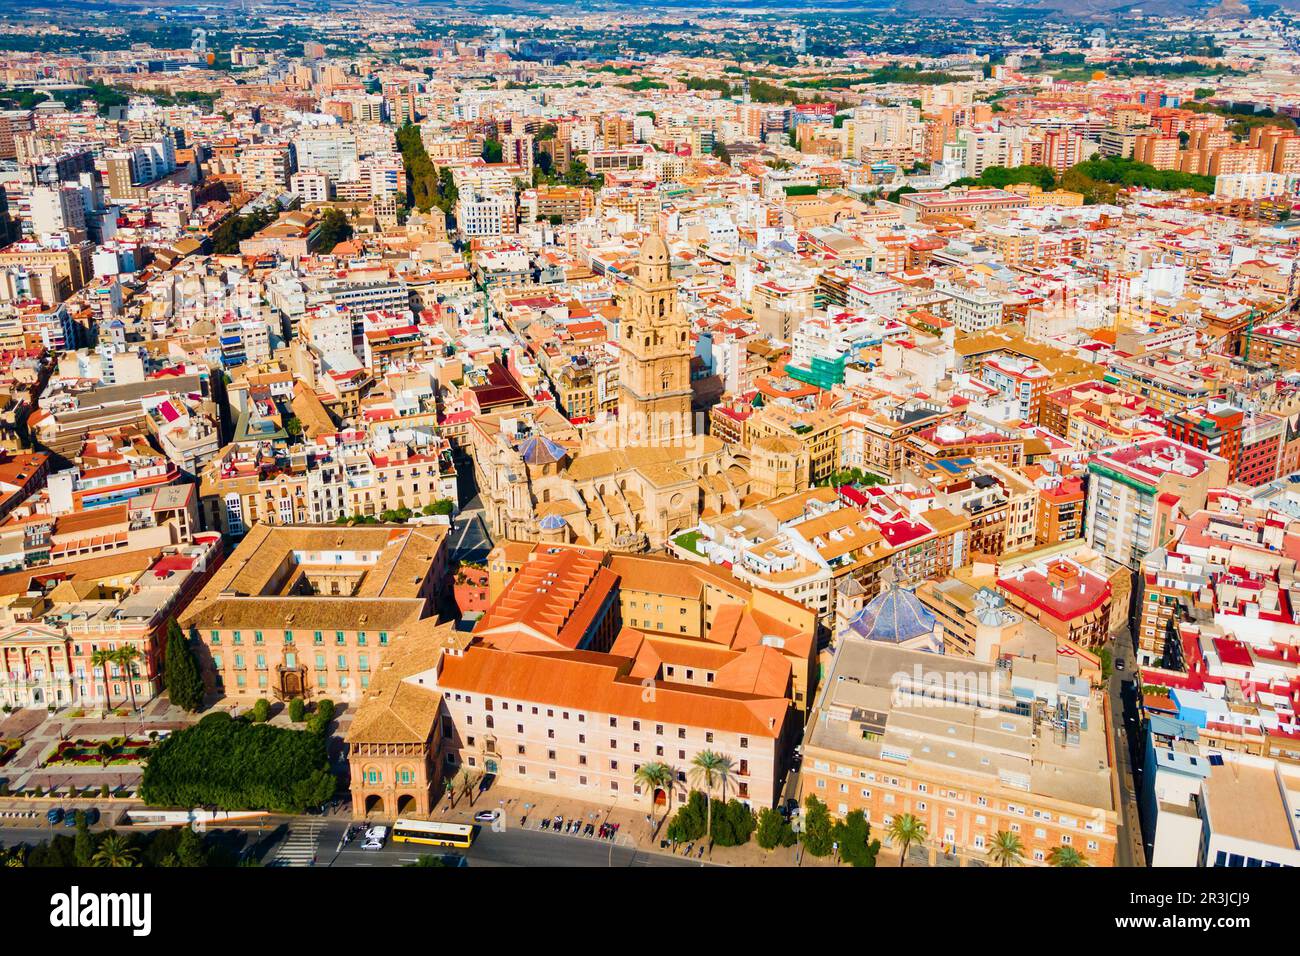 La Cathédrale de l'église Saint Mary vue panoramique aérienne, Murcie. Murcia est une ville dans le sud-est de l'Espagne. Banque D'Images